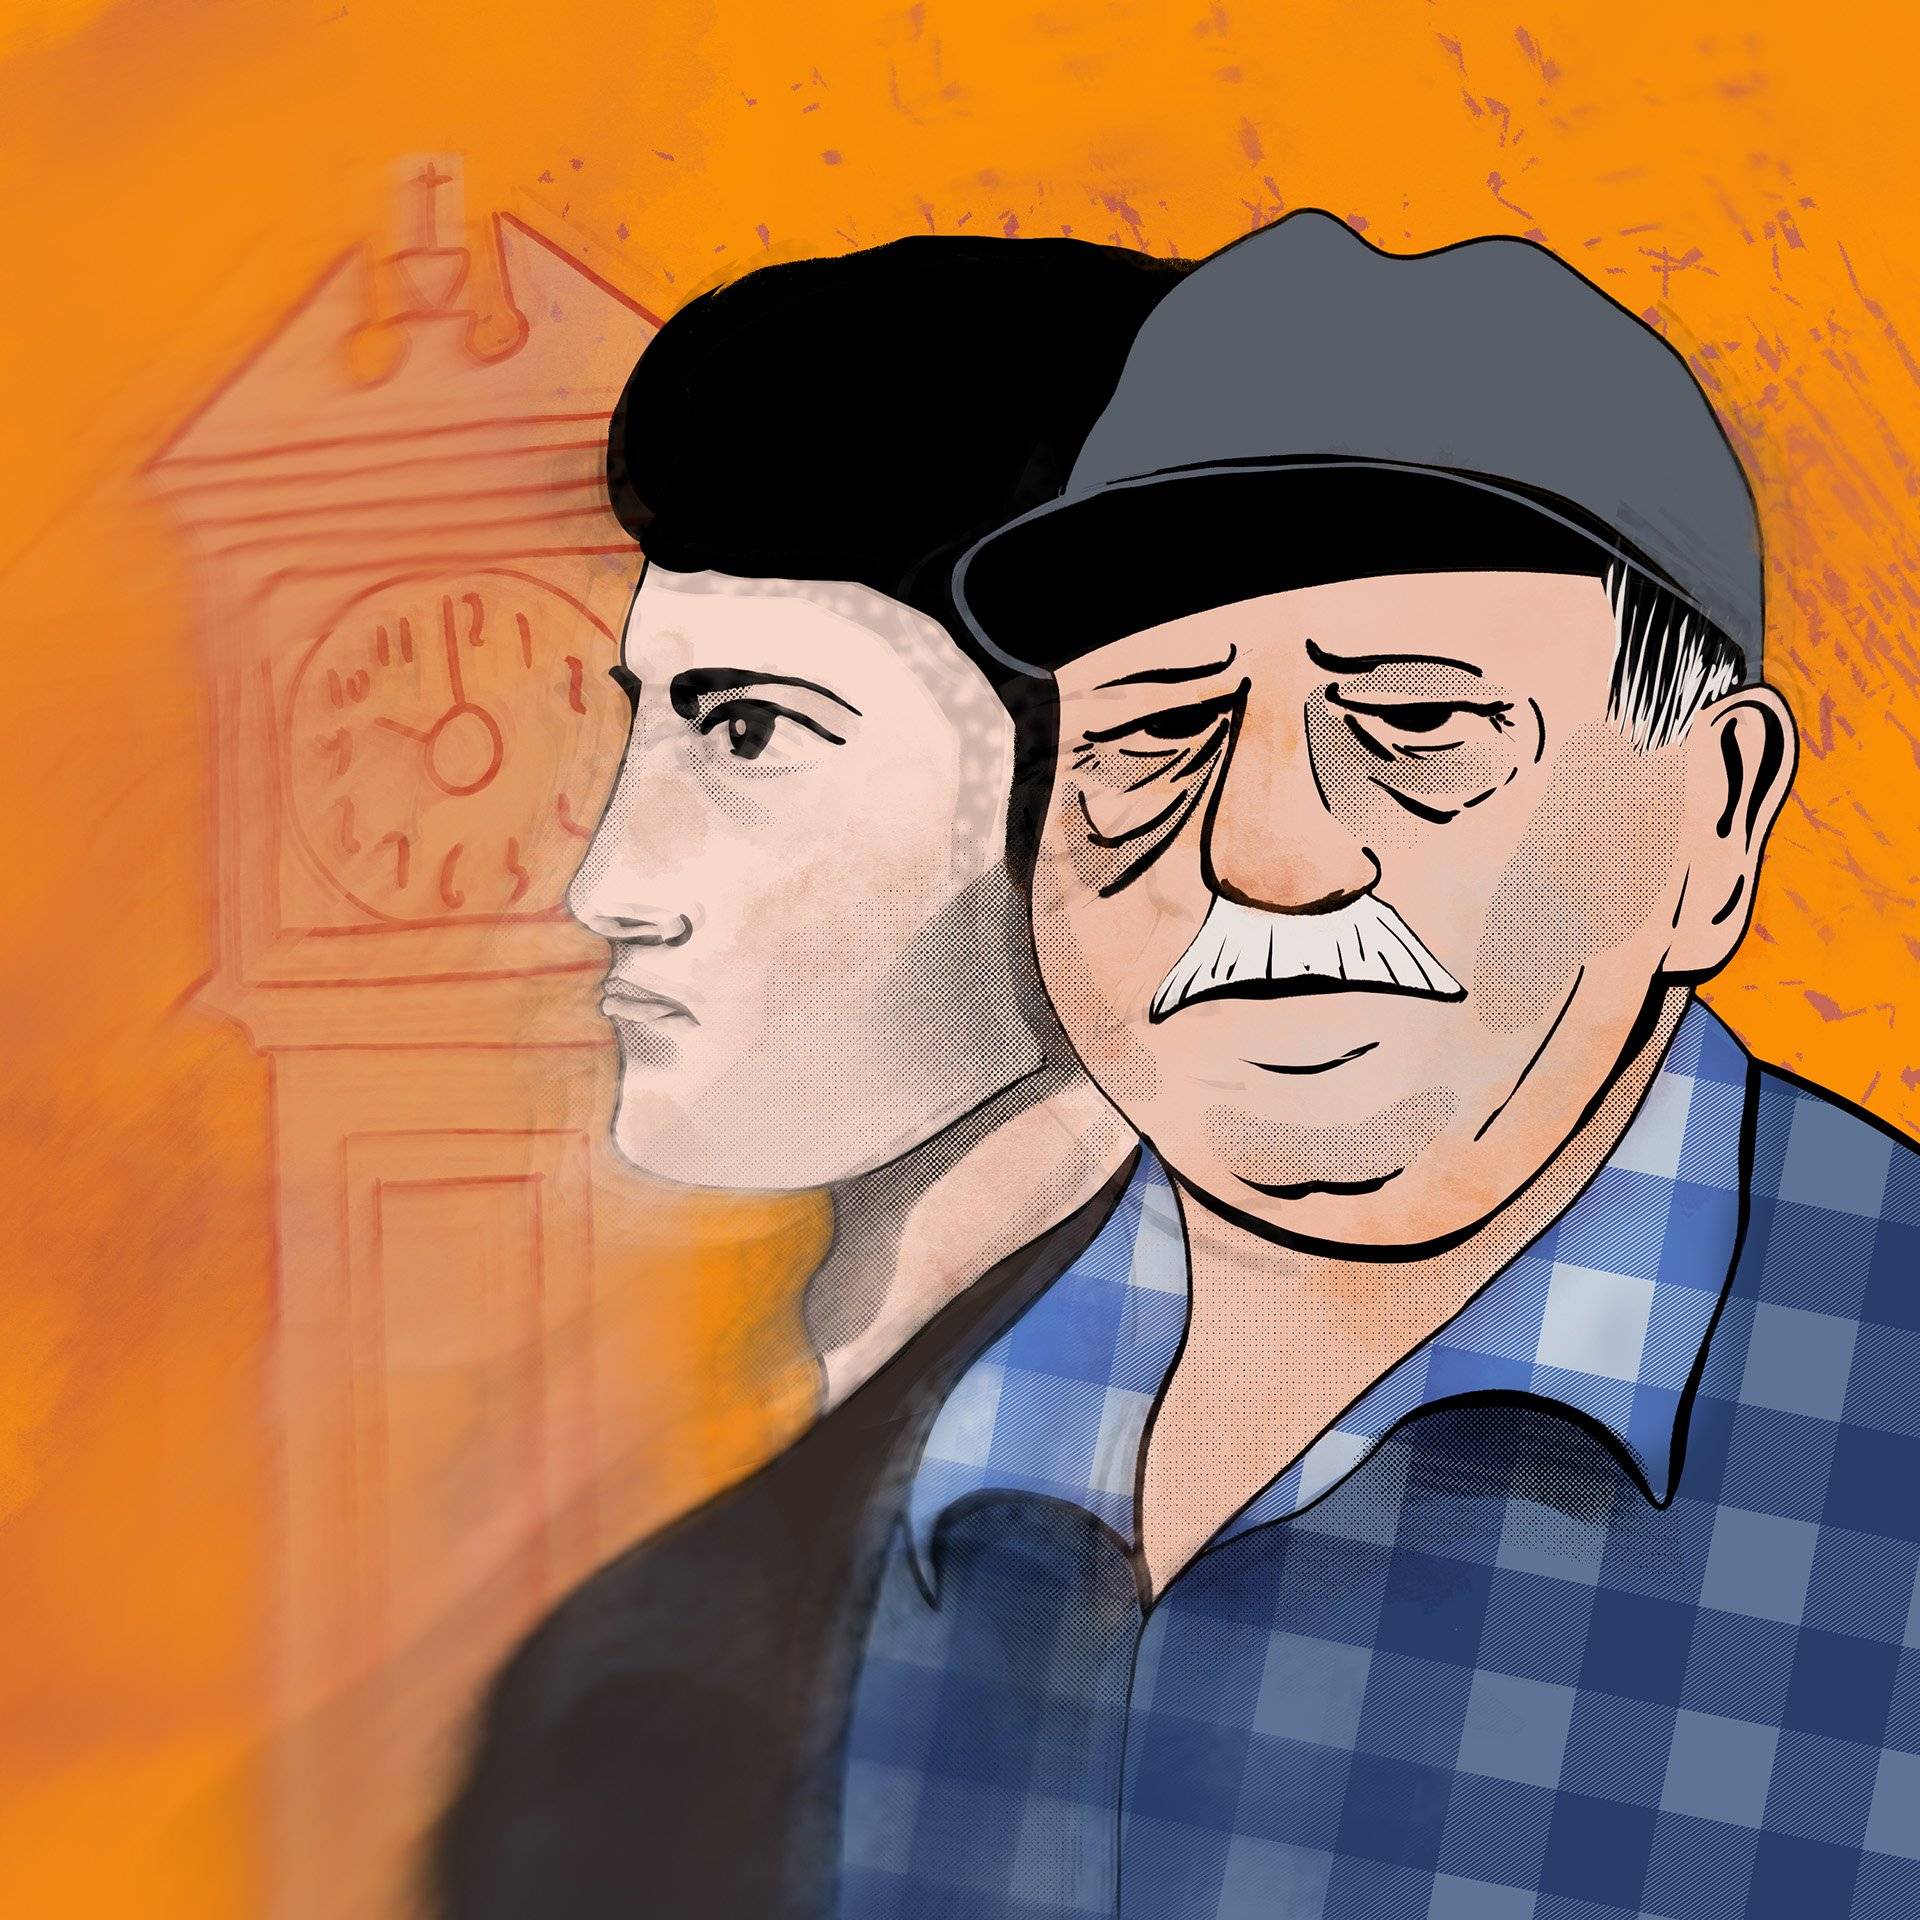 Ilustracja przedstawiająca starszego mężczyznę, za którym widać profil młodego chłopaka.